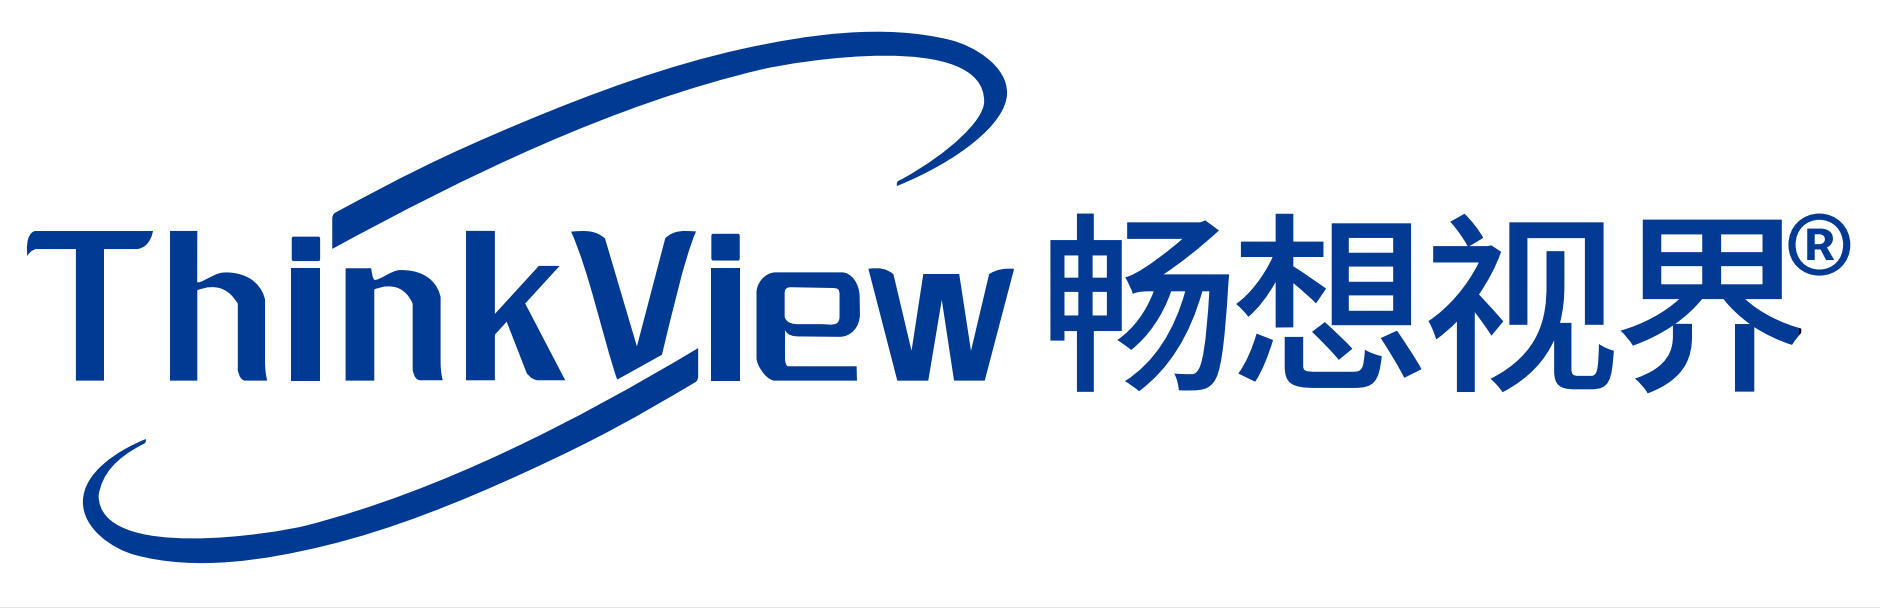 Shenzhen Thinkview Teknoloji co, Ltd